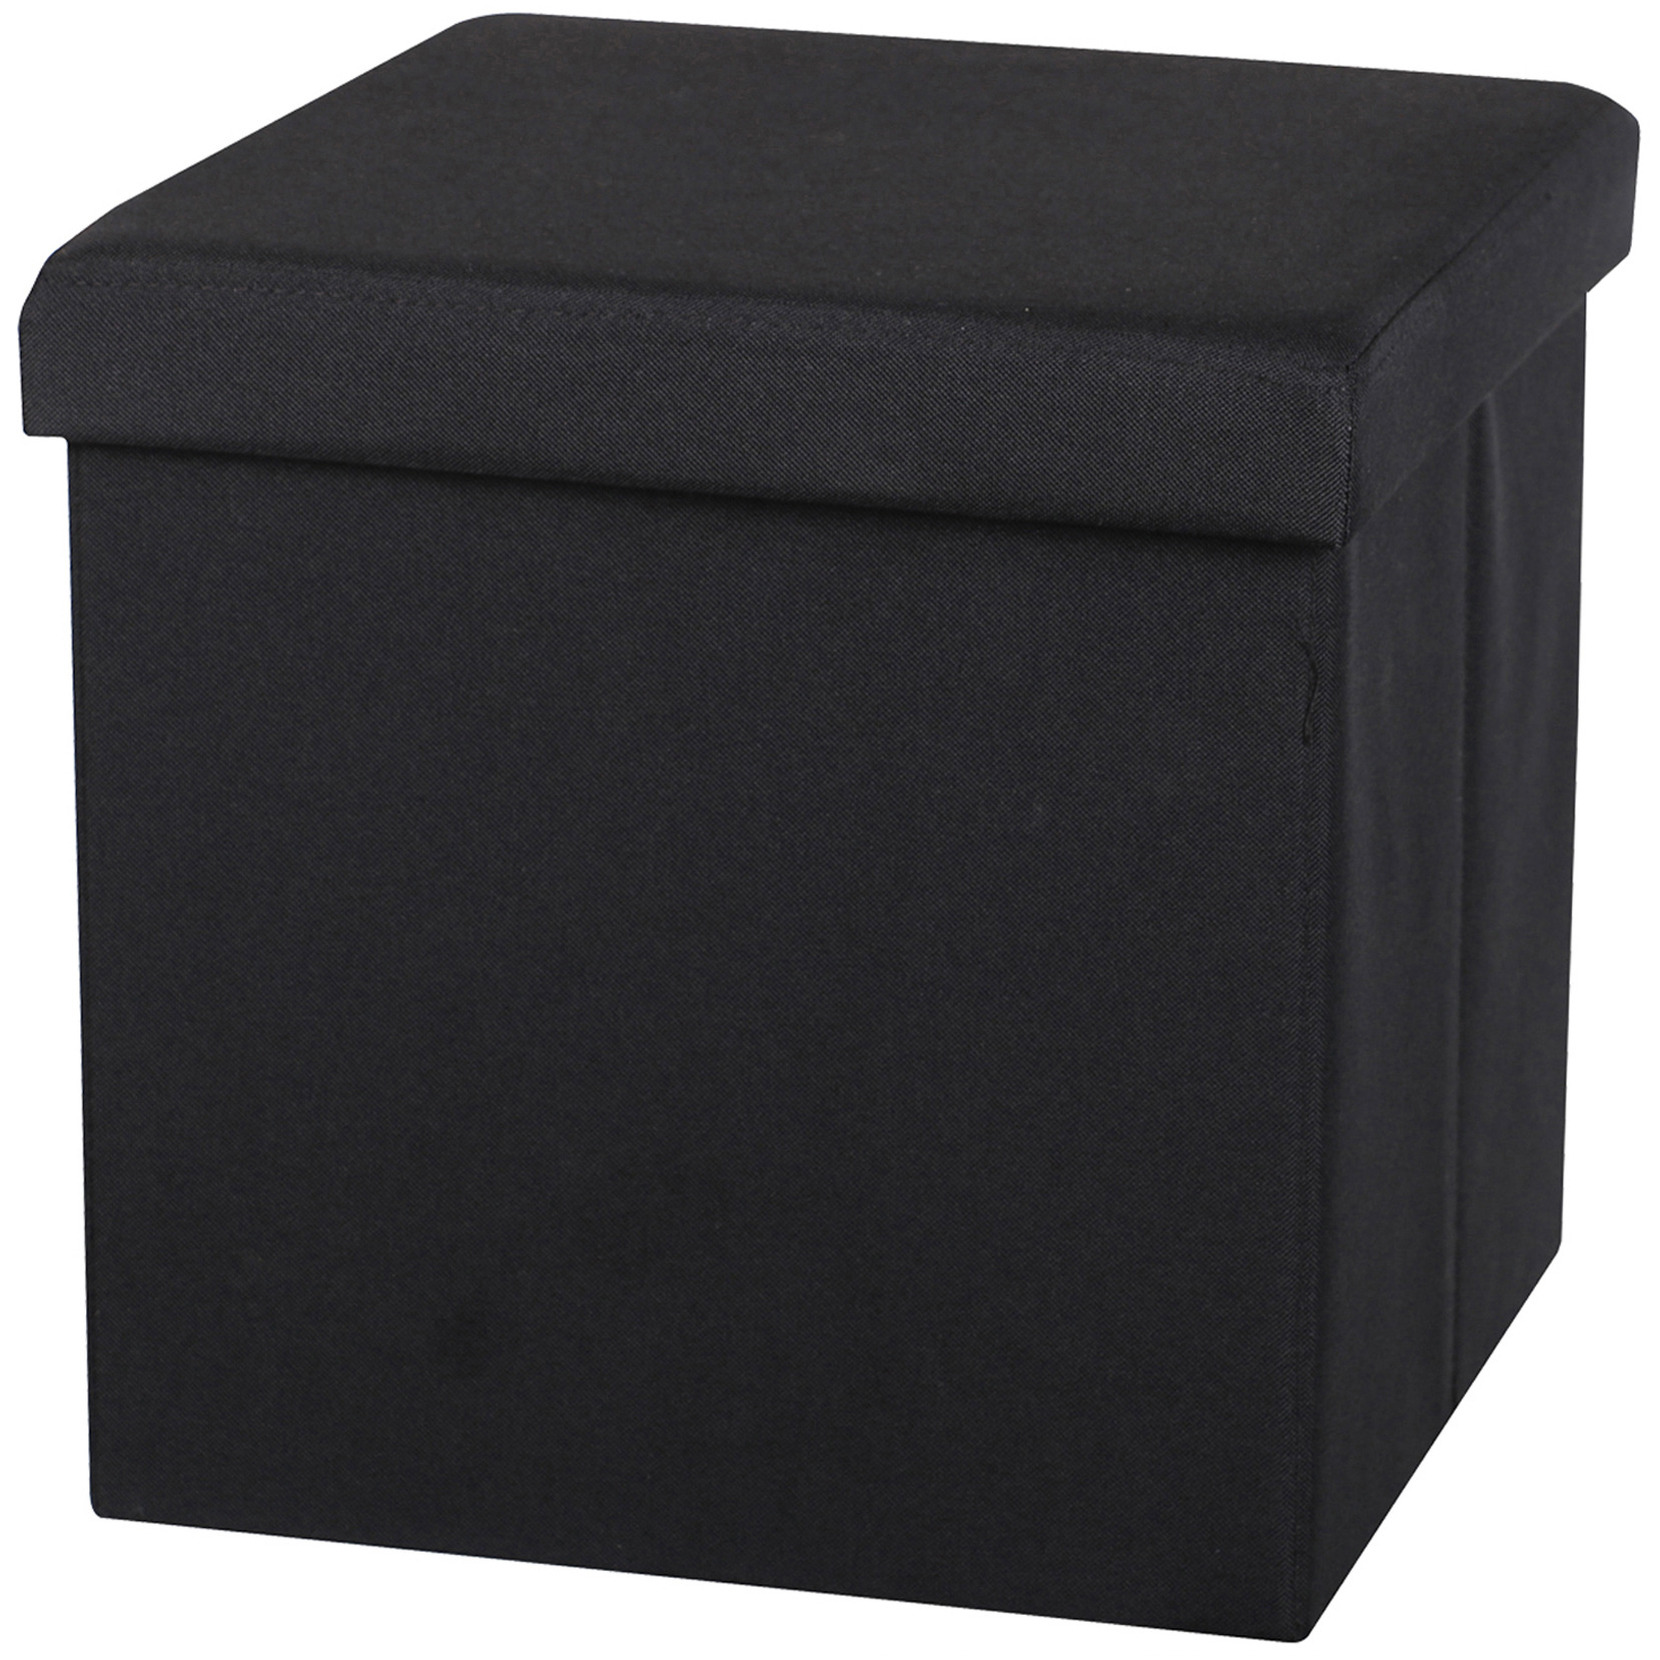 Poef-hocker opbergbox zit krukje zwart linnen-mdf 37 x 37 cm opvouwbaar